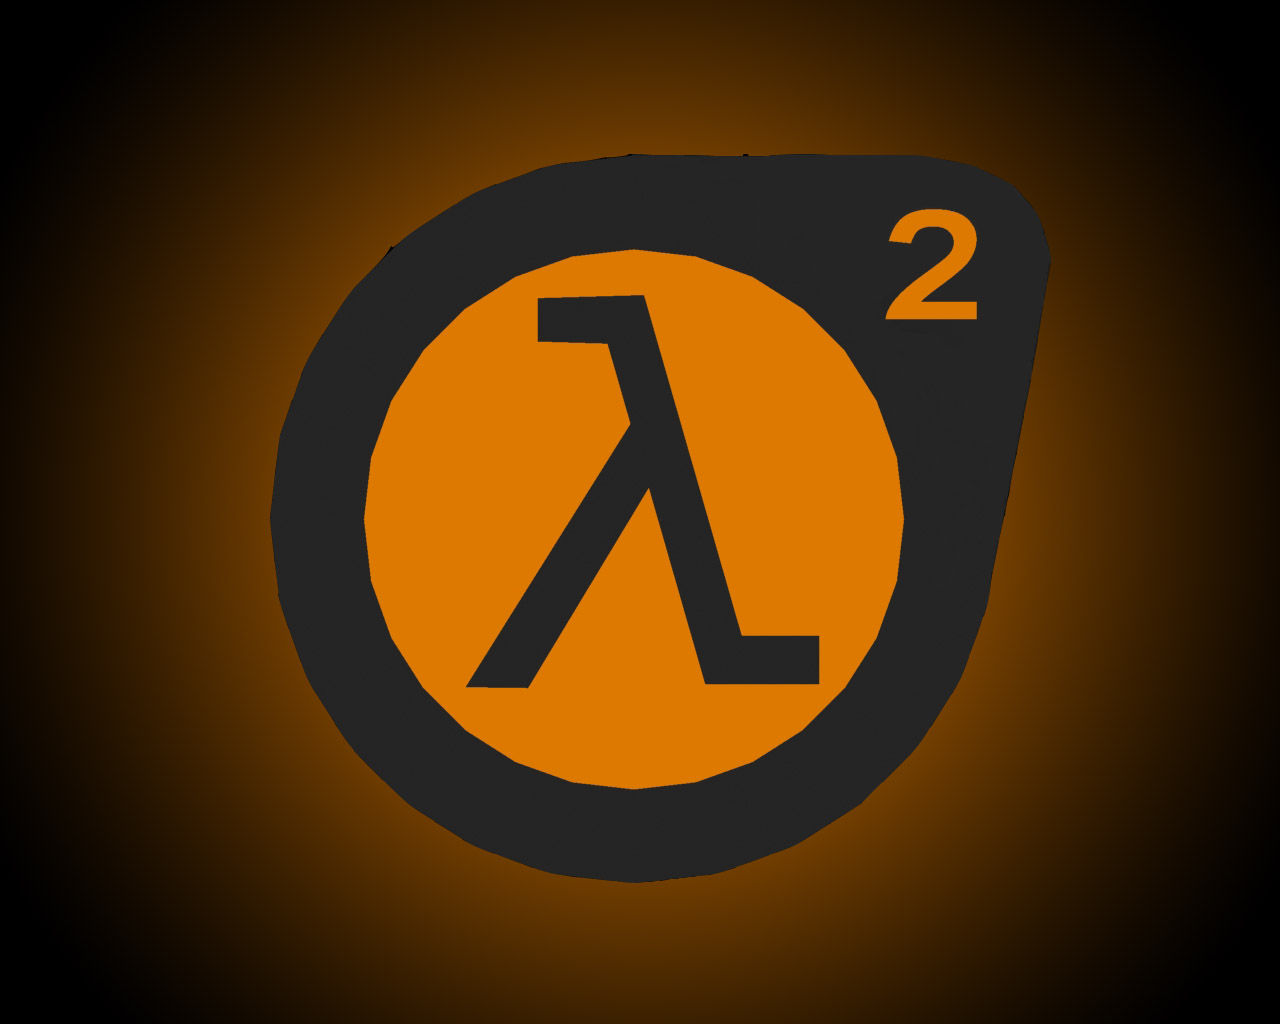 3D Half-Life 2 Logo Wallpaper by bored154 on DeviantArt